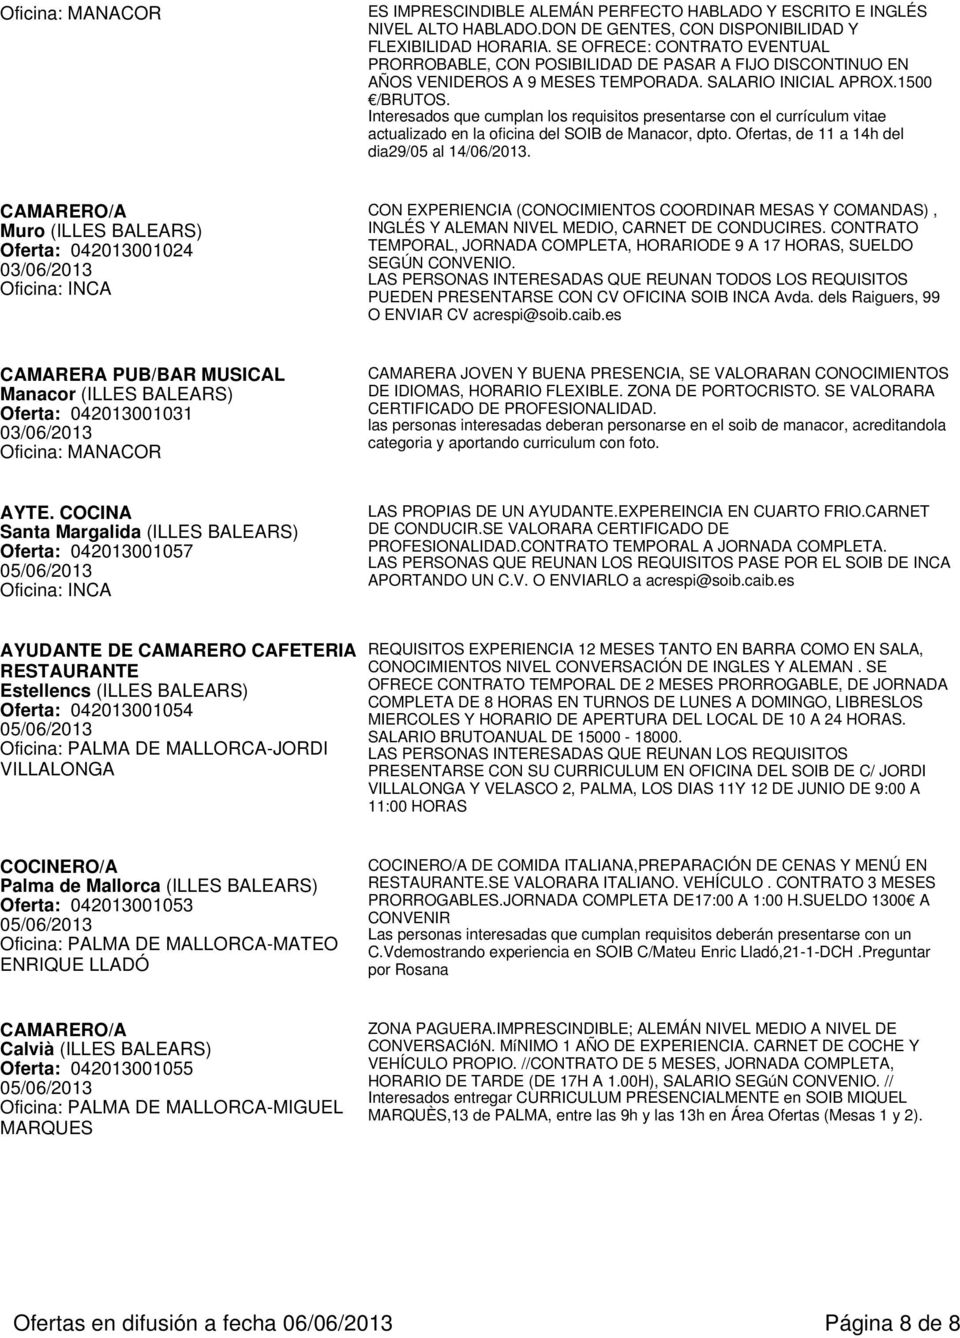 Interesados que cumplan los requisitos presentarse con el currículum vitae actualizado en la oficina del SOIB de Manacor, dpto. Ofertas, de 11 a 14h del dia29/05 al 14/06/2013.